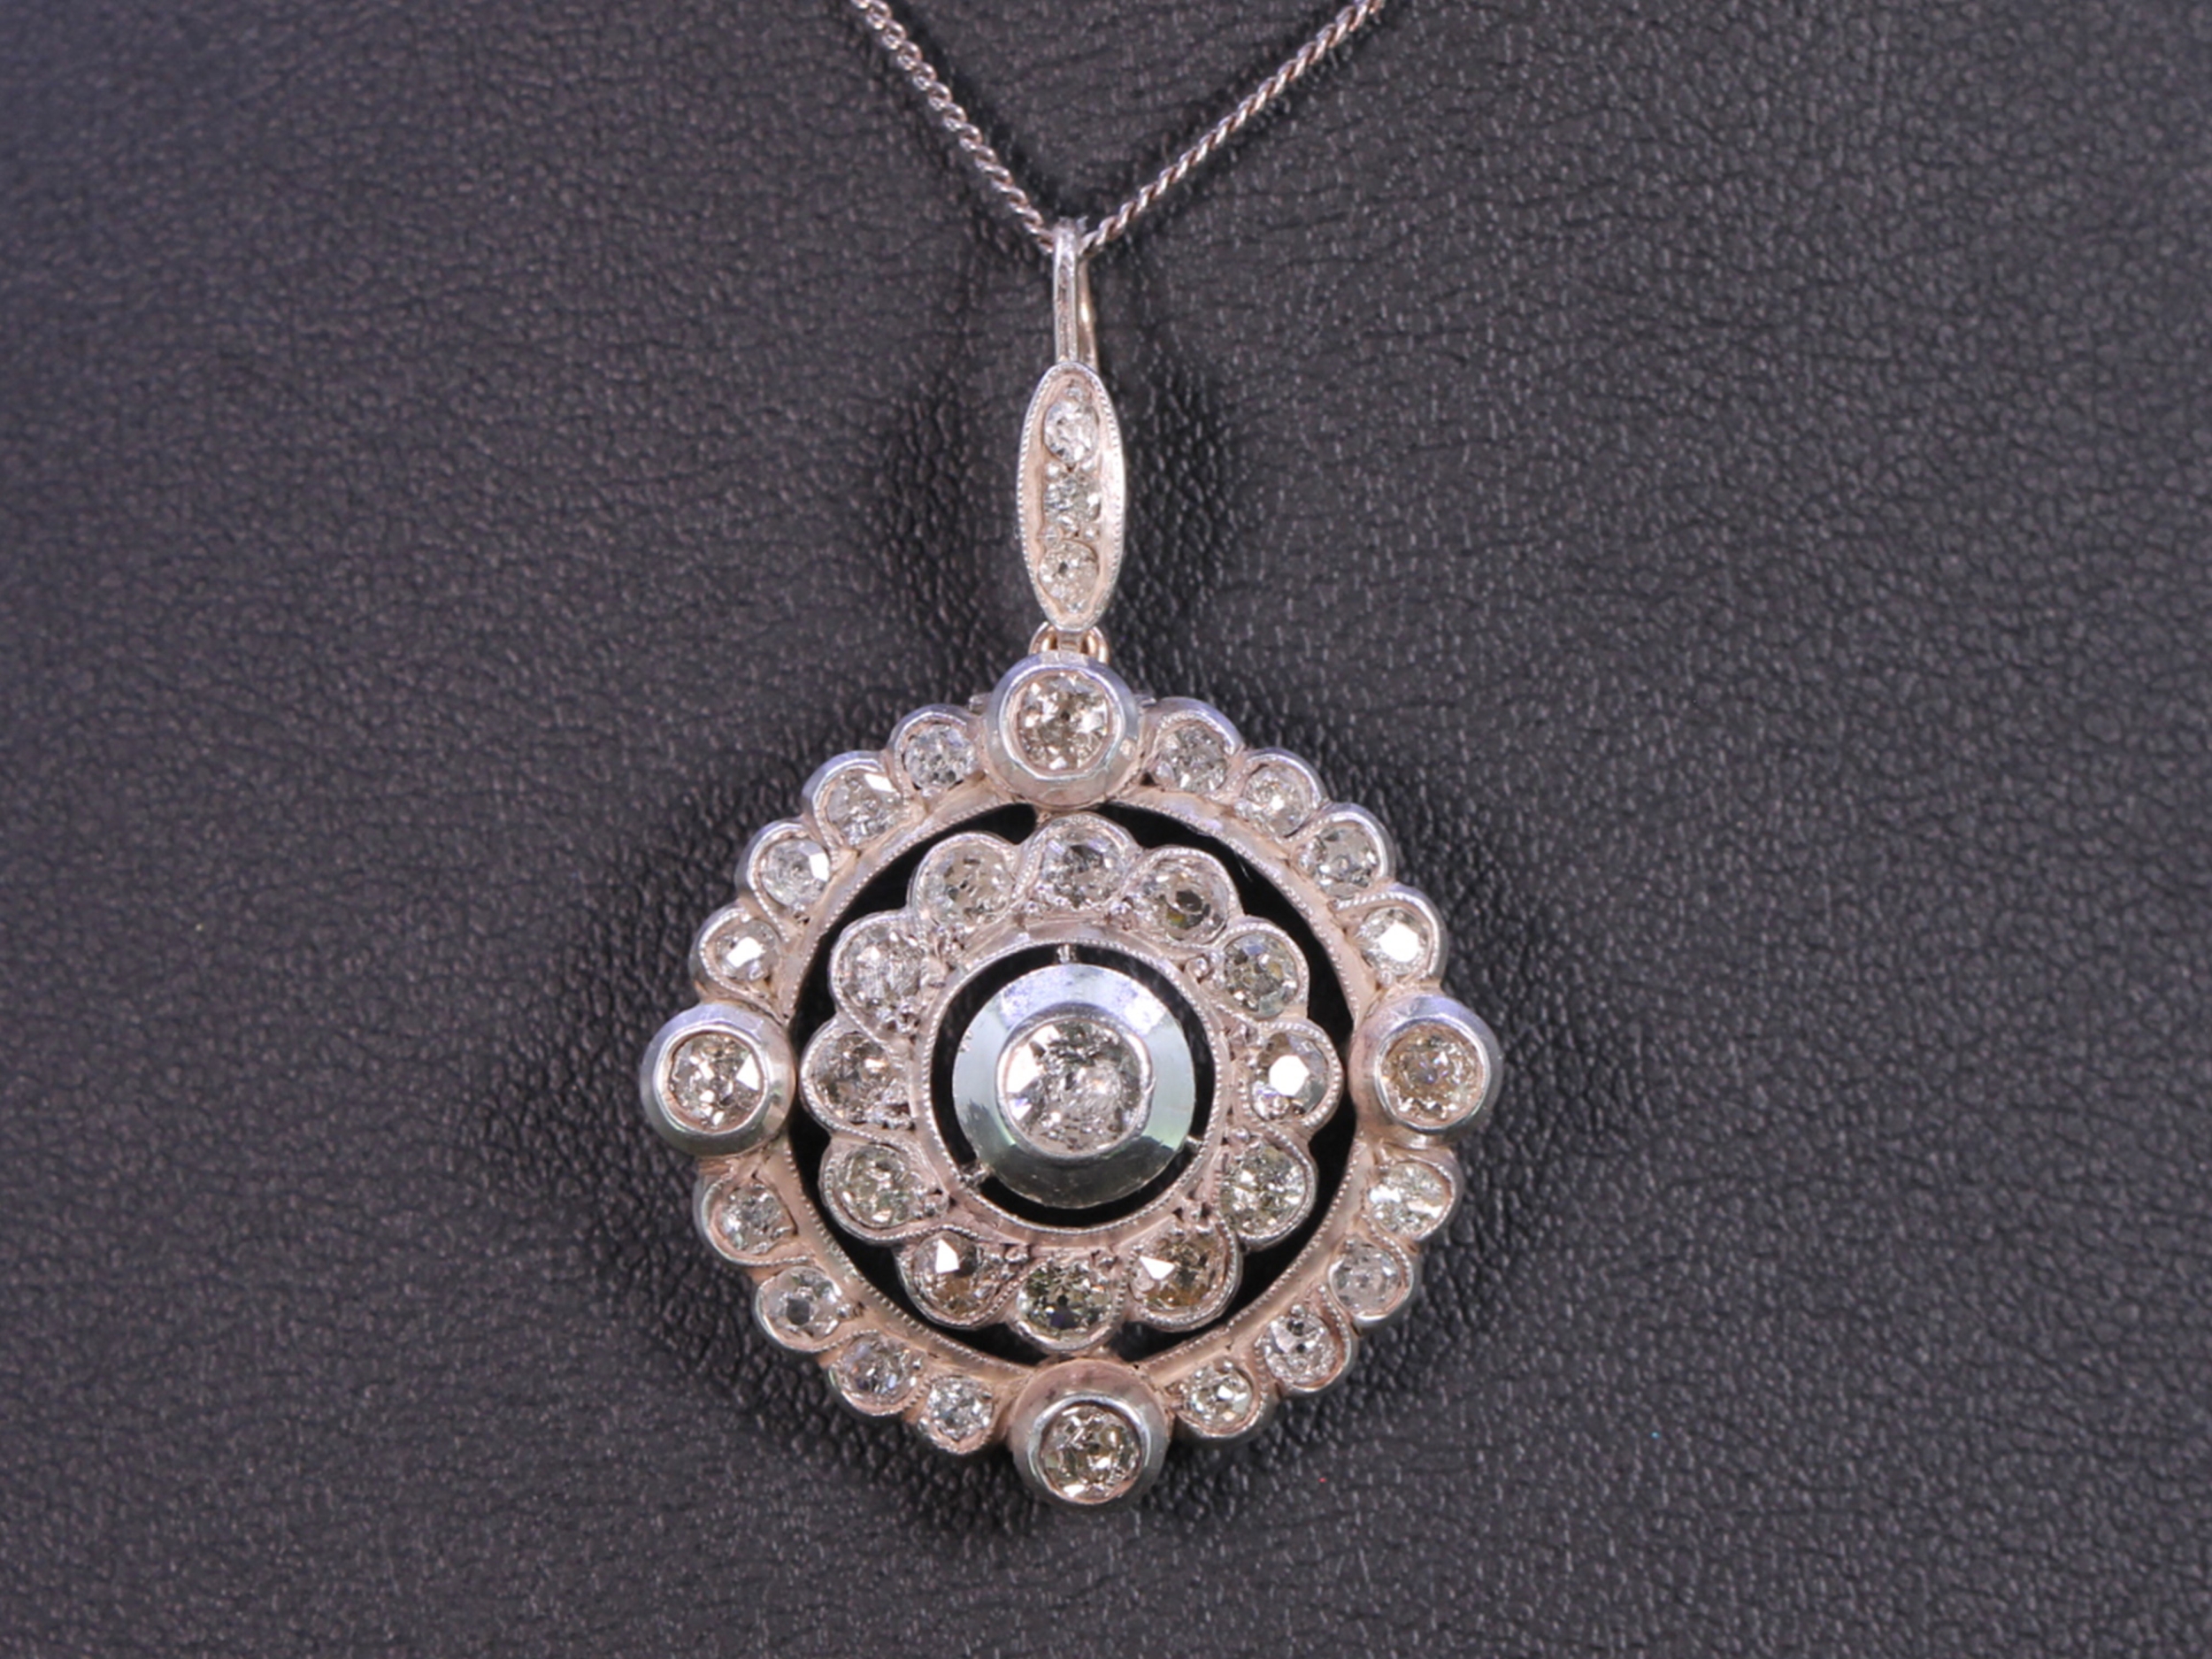 Victorian diamond set circular silver/gold pendant